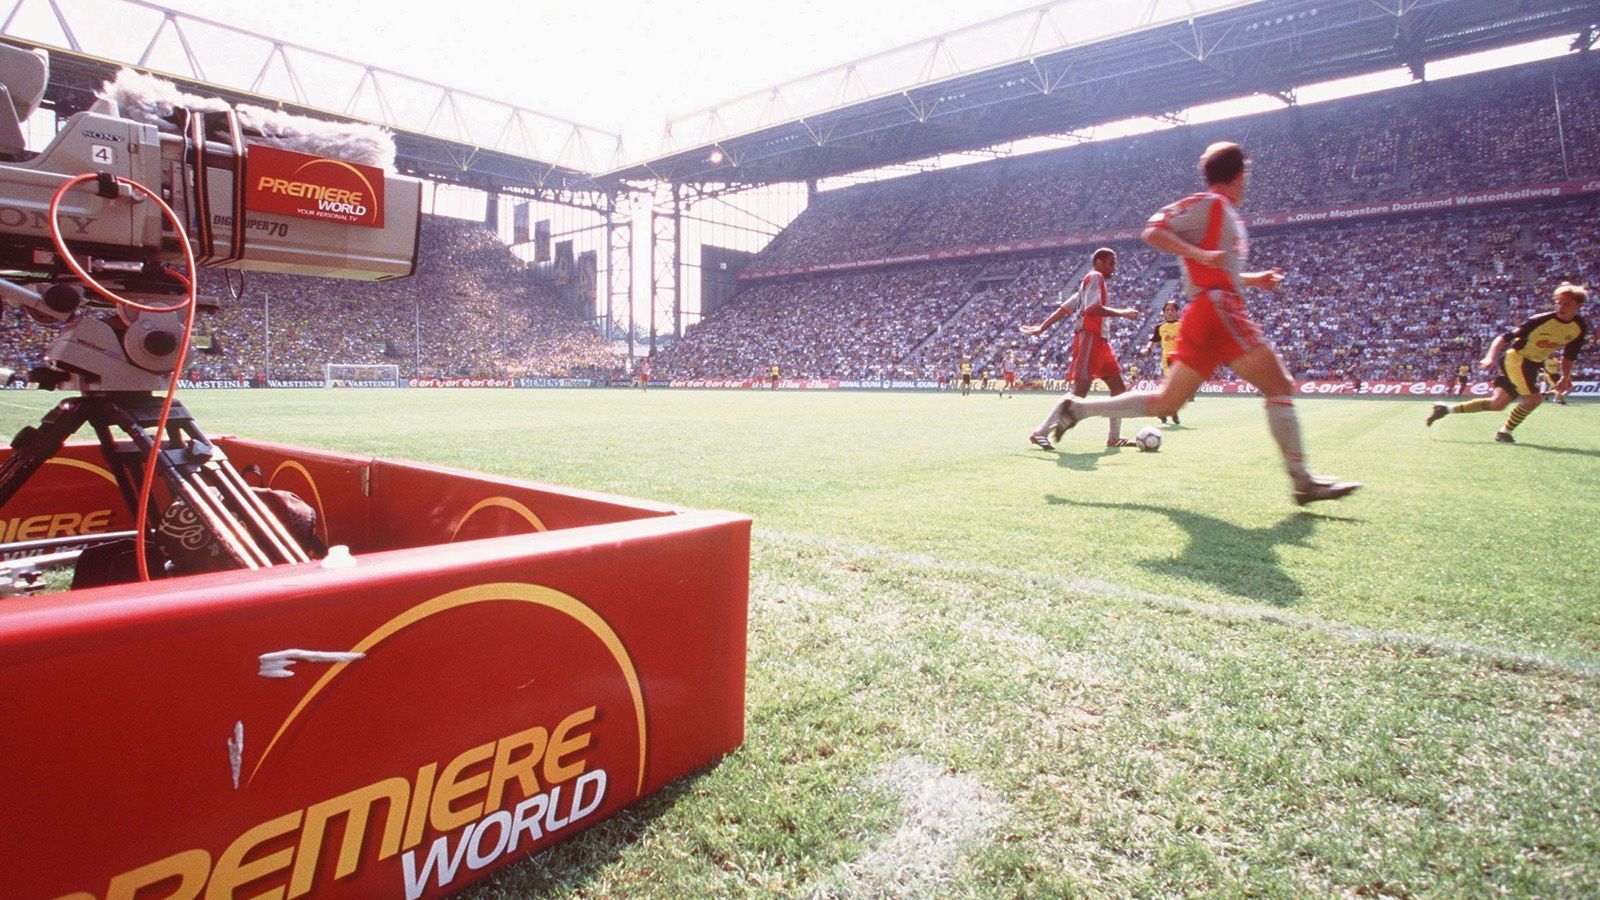 
                <strong>Bundesliga auch im Pay-TV</strong><br>
                1991/92 steigt Pay-TV-Sender "Premiere" in die Live-Übertragung der Bundesliga mit ein - erstmal mit nur einem Spiel pro Woche. Die TV-Rechte kosten mittlerweile 80 Millionen Mark pro Saison. 
              